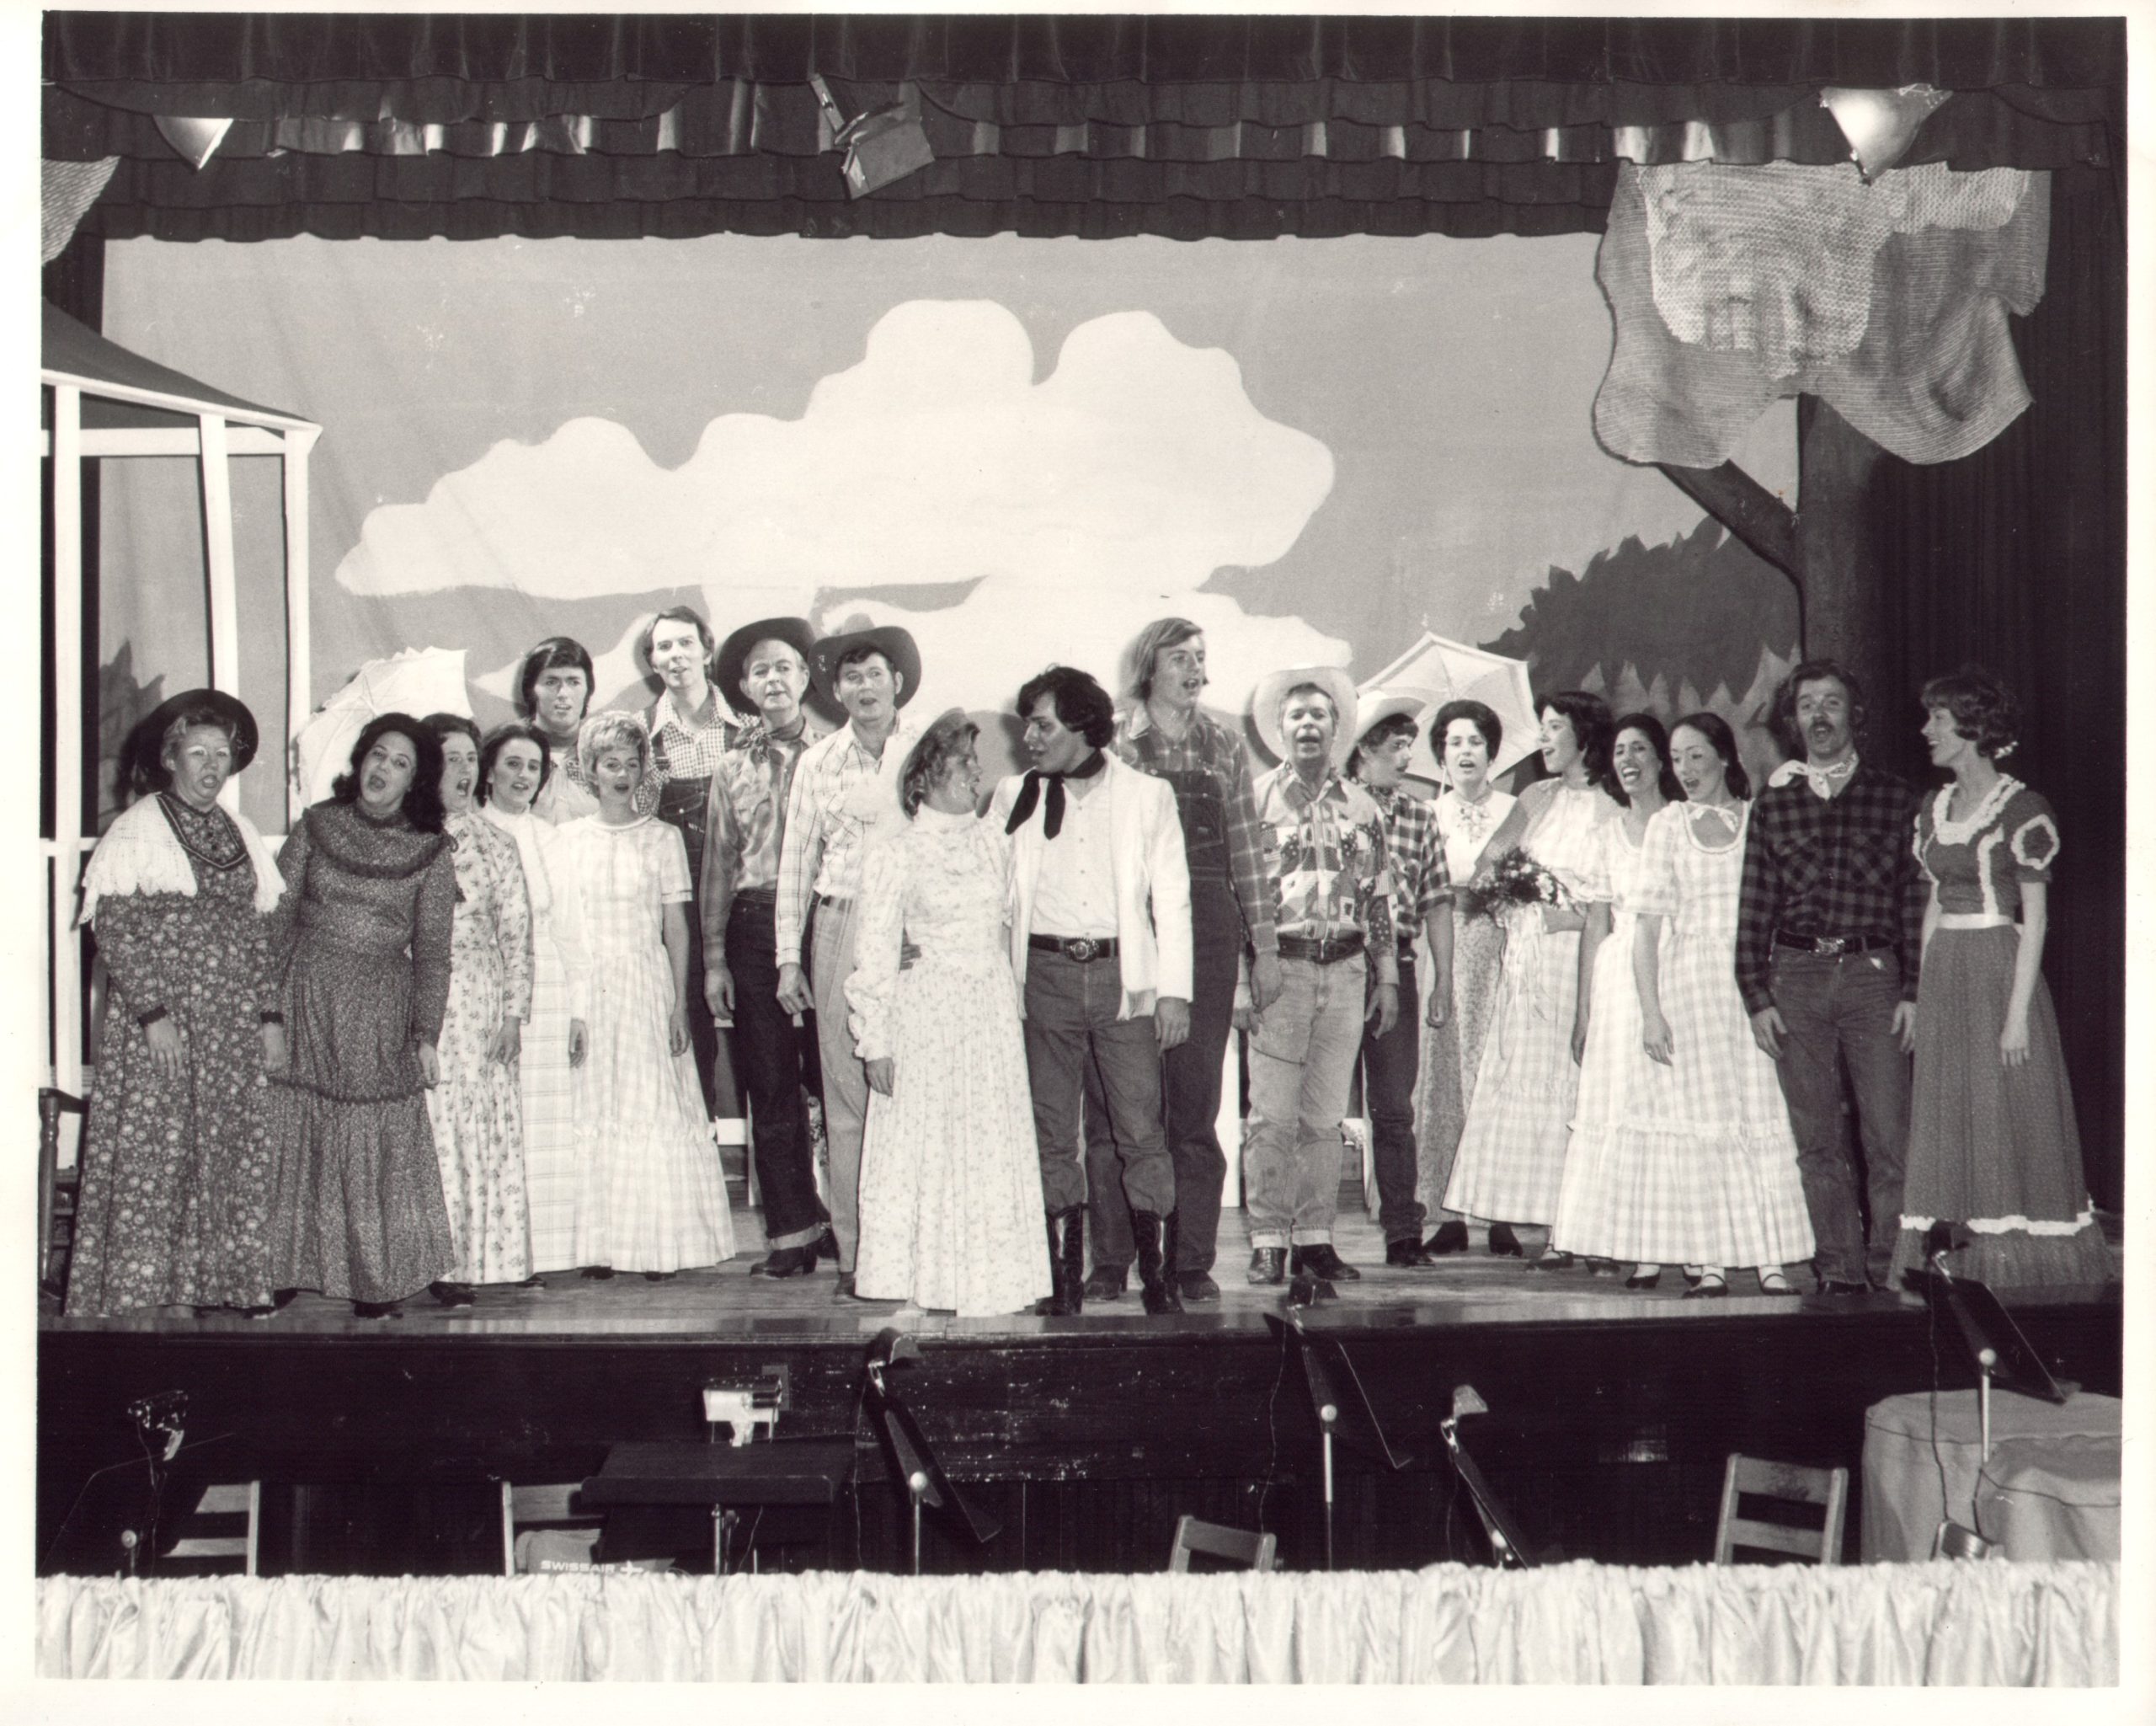 cast photo of "Oklahoma!" production